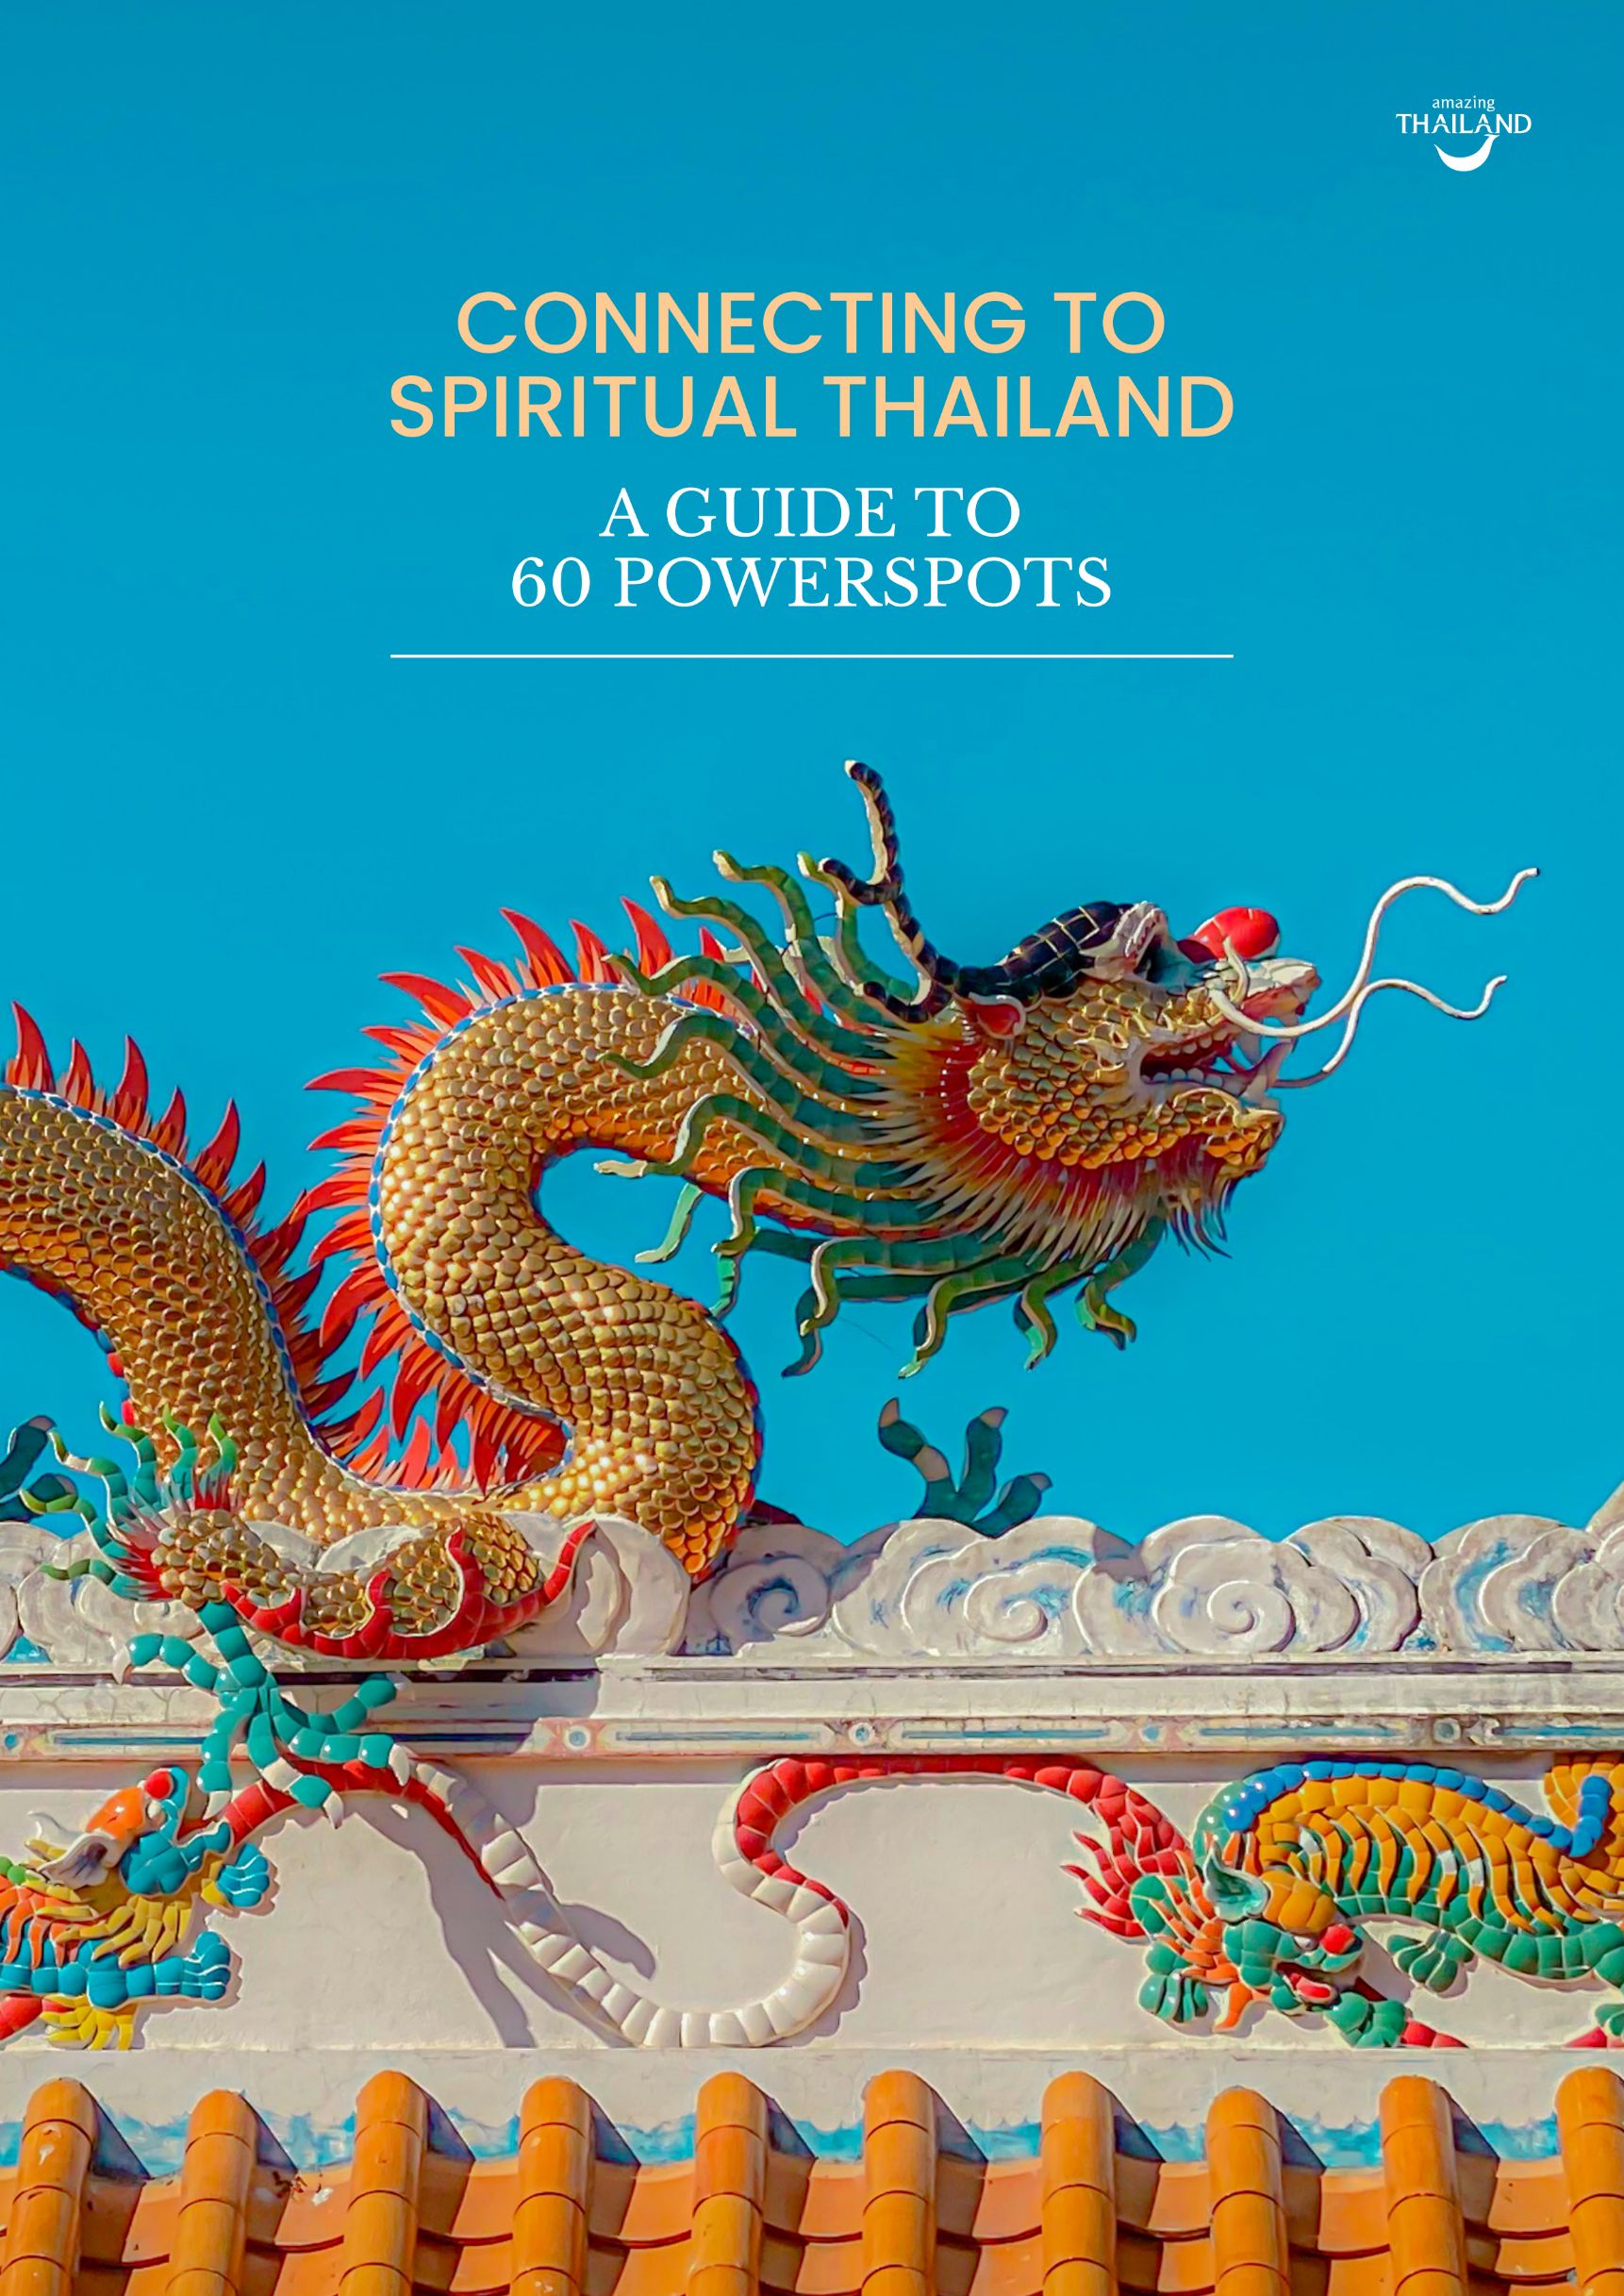 ททท. ปลุกกระแสท่องเที่ยวสายมู สนับสนุน E-Book “Connecting to Spiritual Thailand”